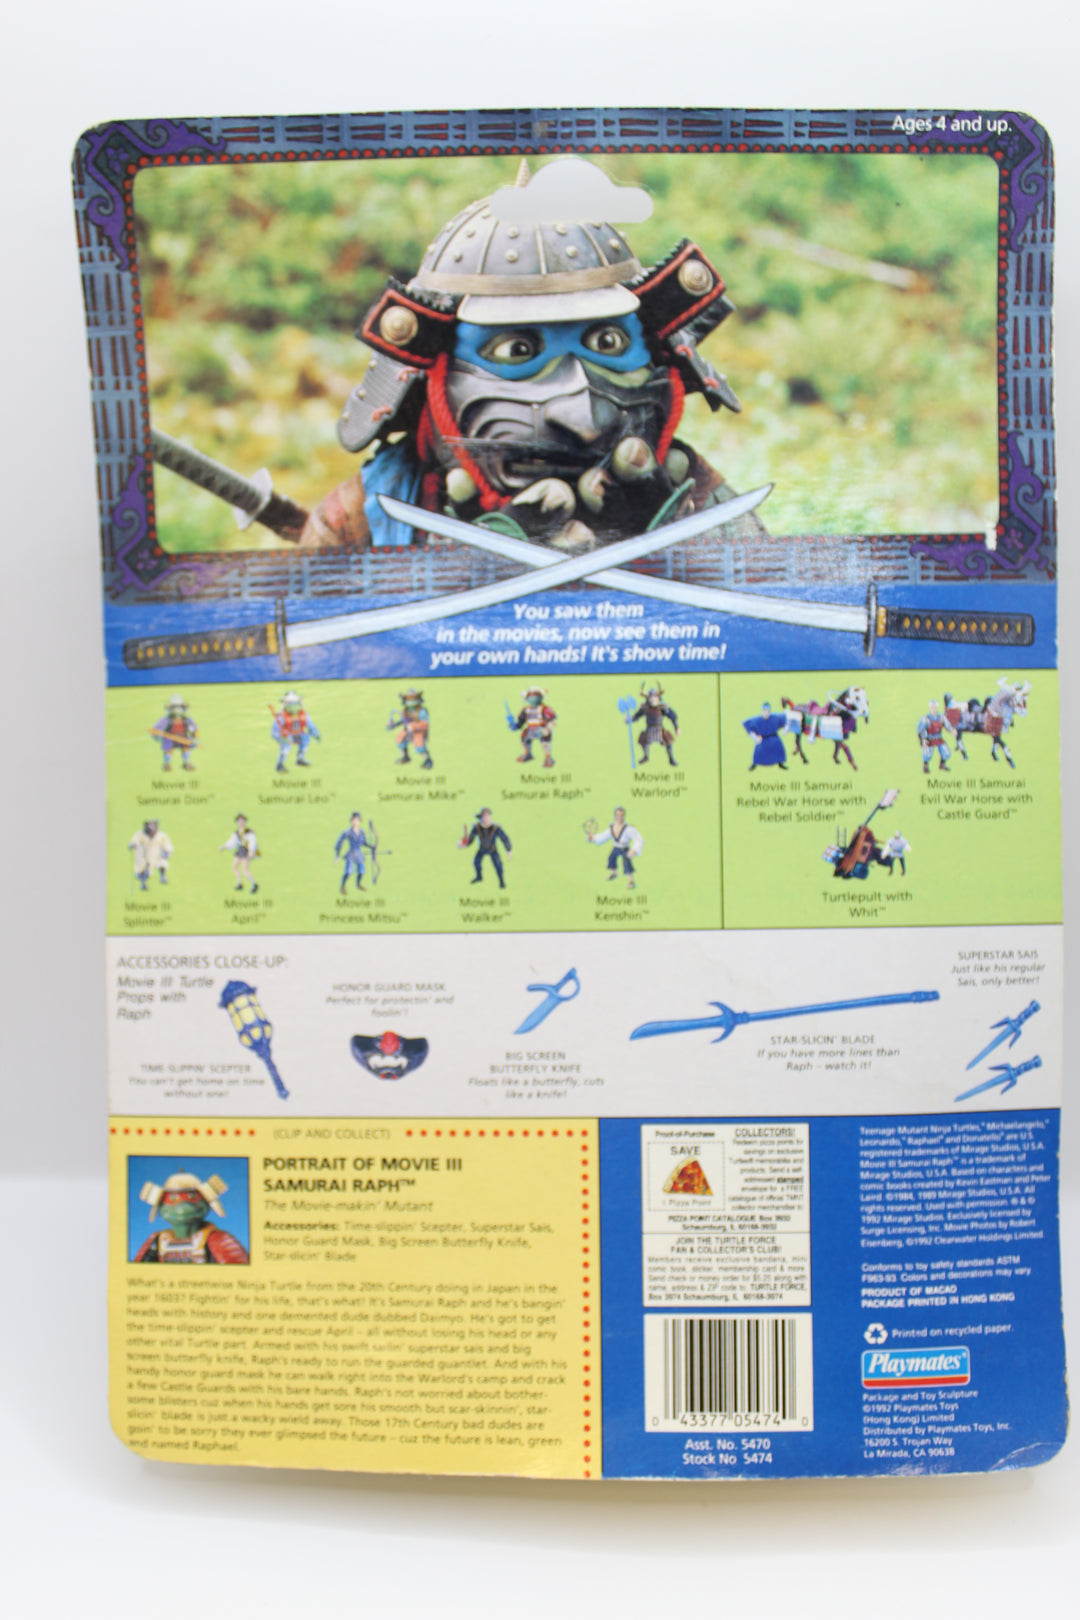 1992 Playmates TMNT Samurai Raphael